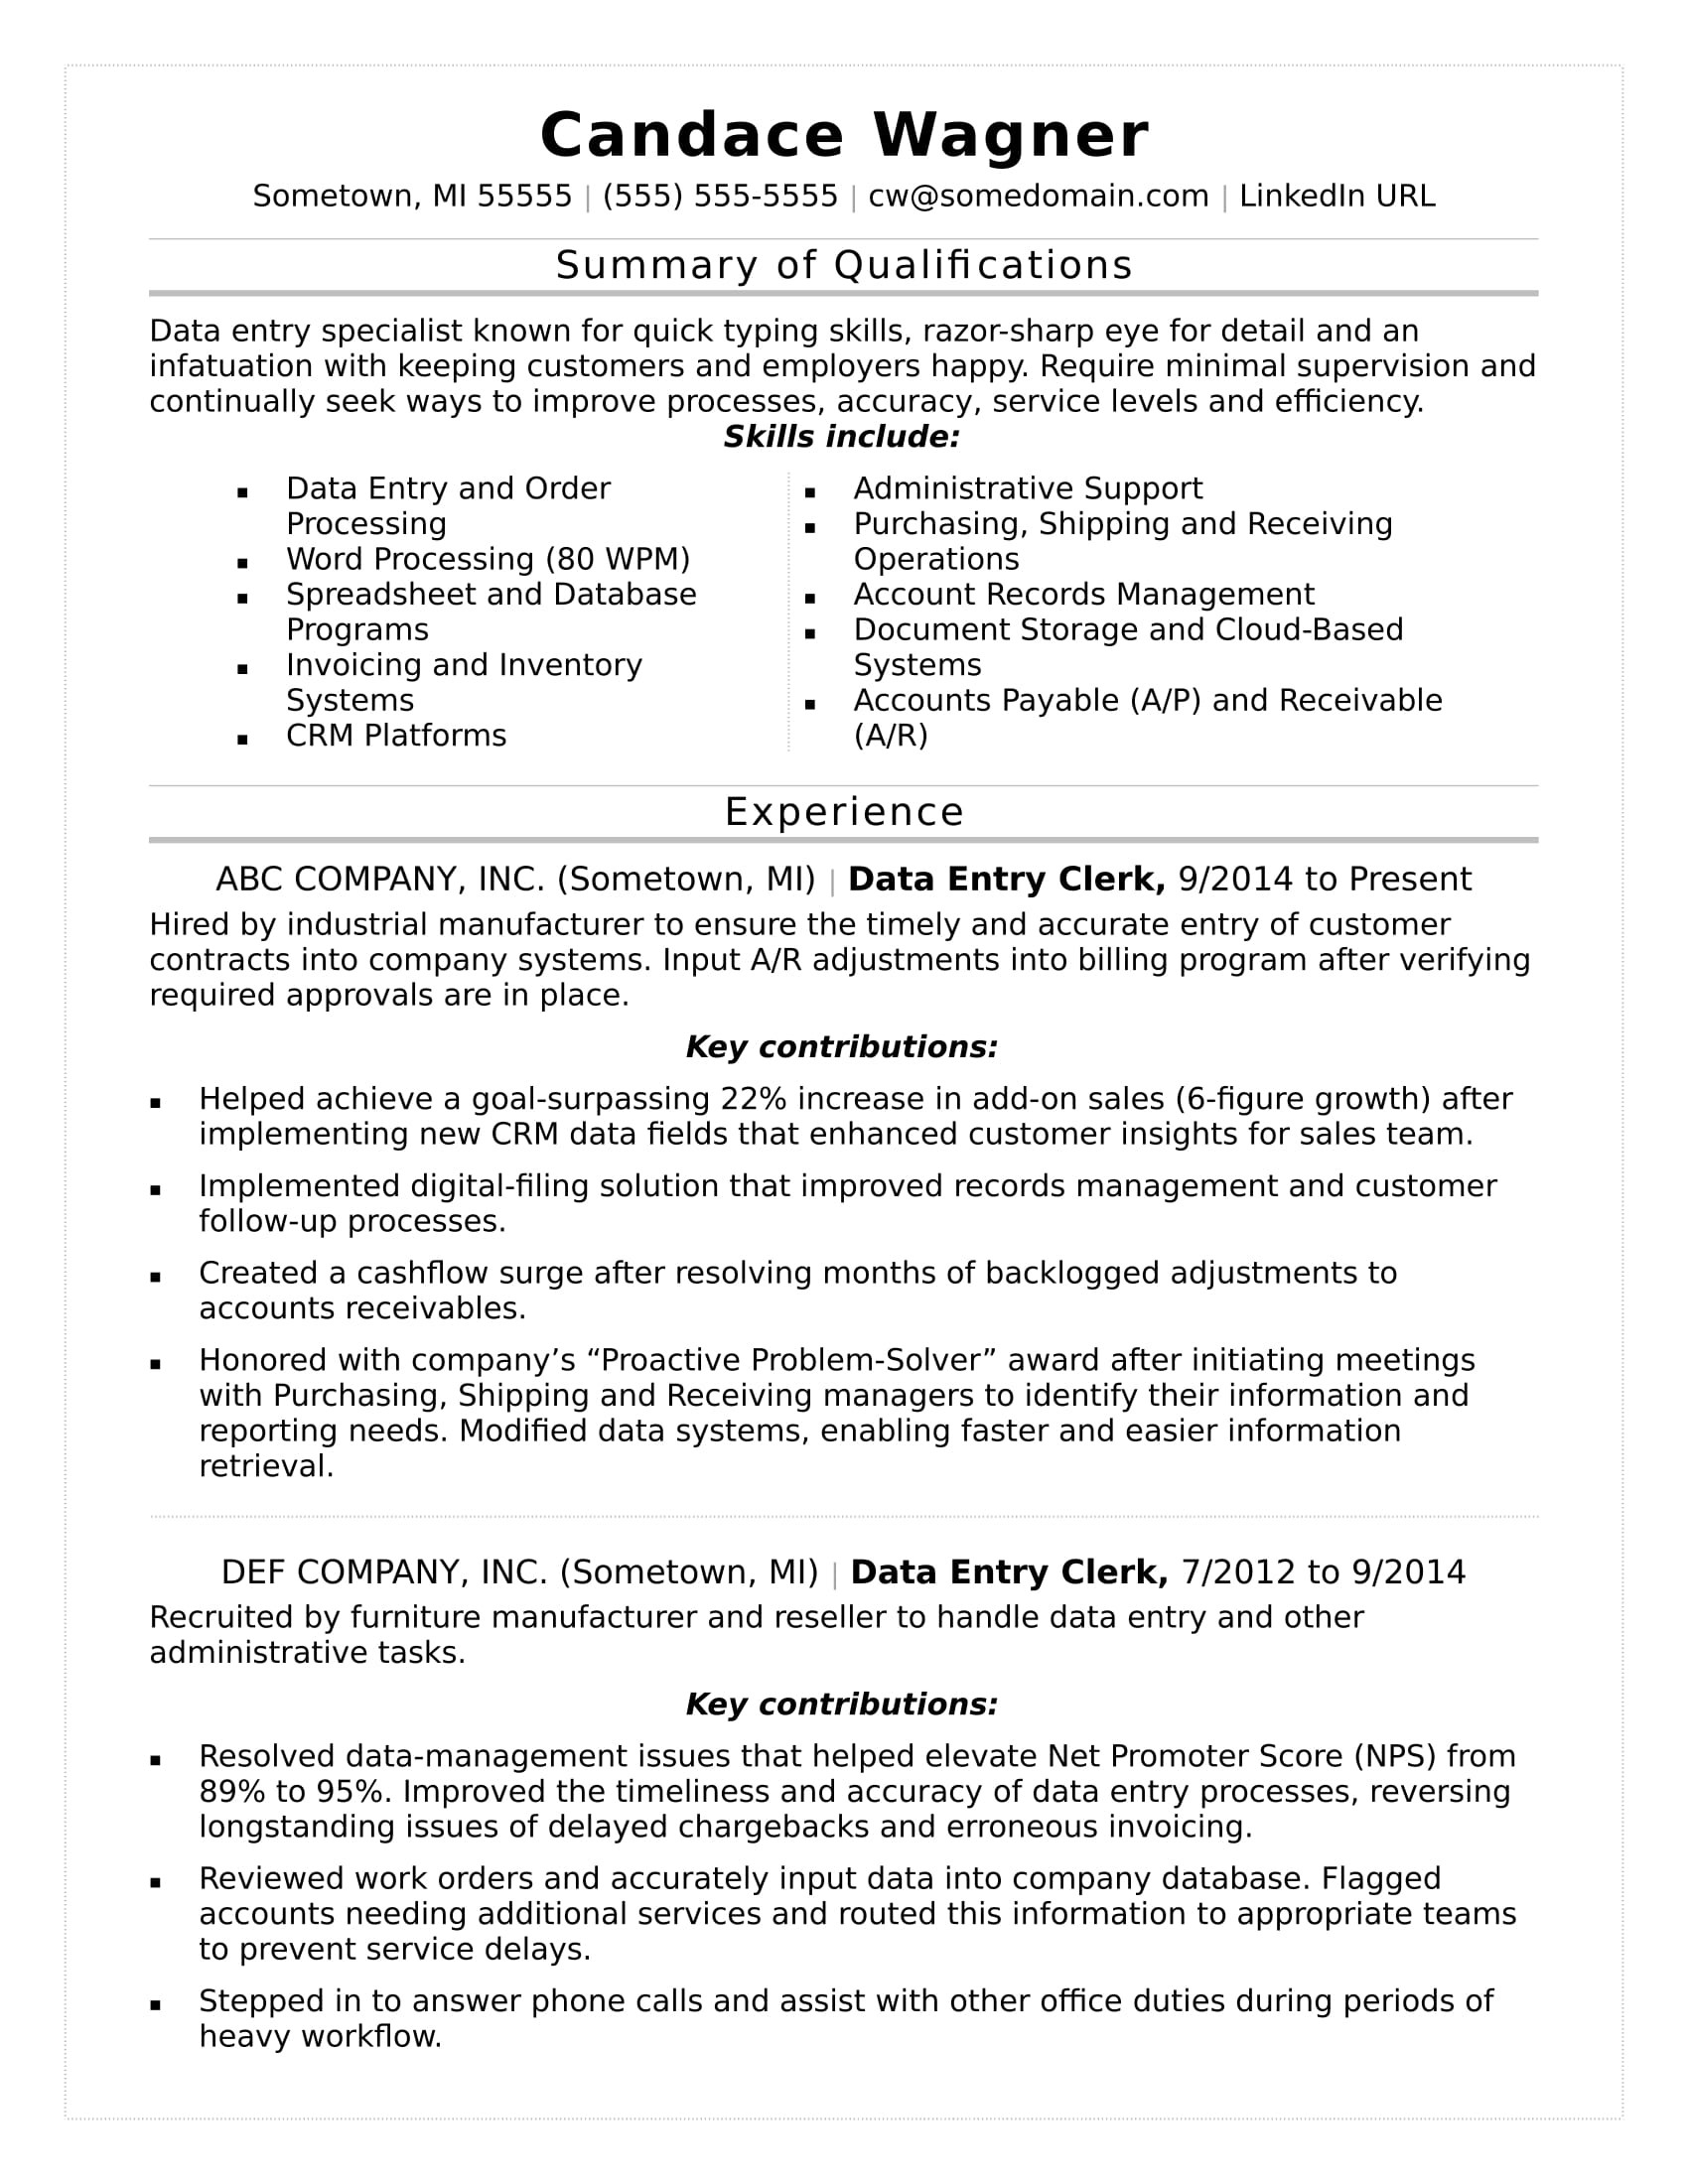 Sample Resume for Minimum Wage Jobs Data Entry Resume Monster.com